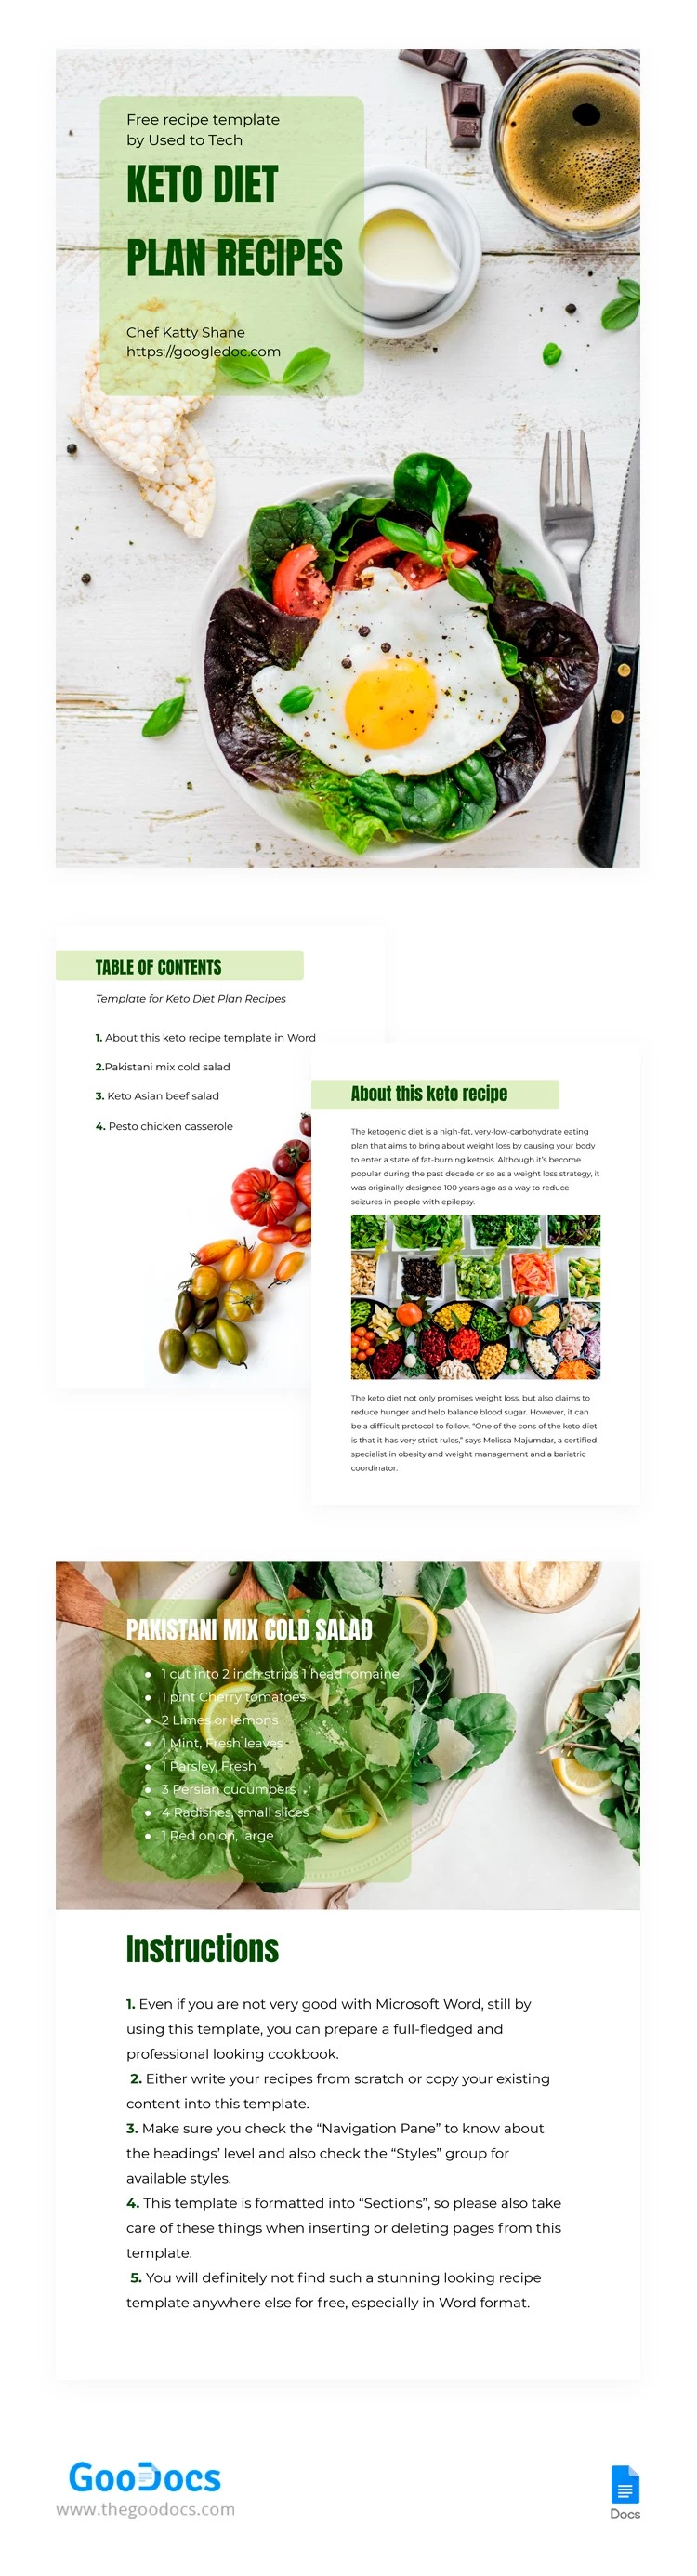 Libro sulla dieta chetogenica - free Google Docs Template - 10062149